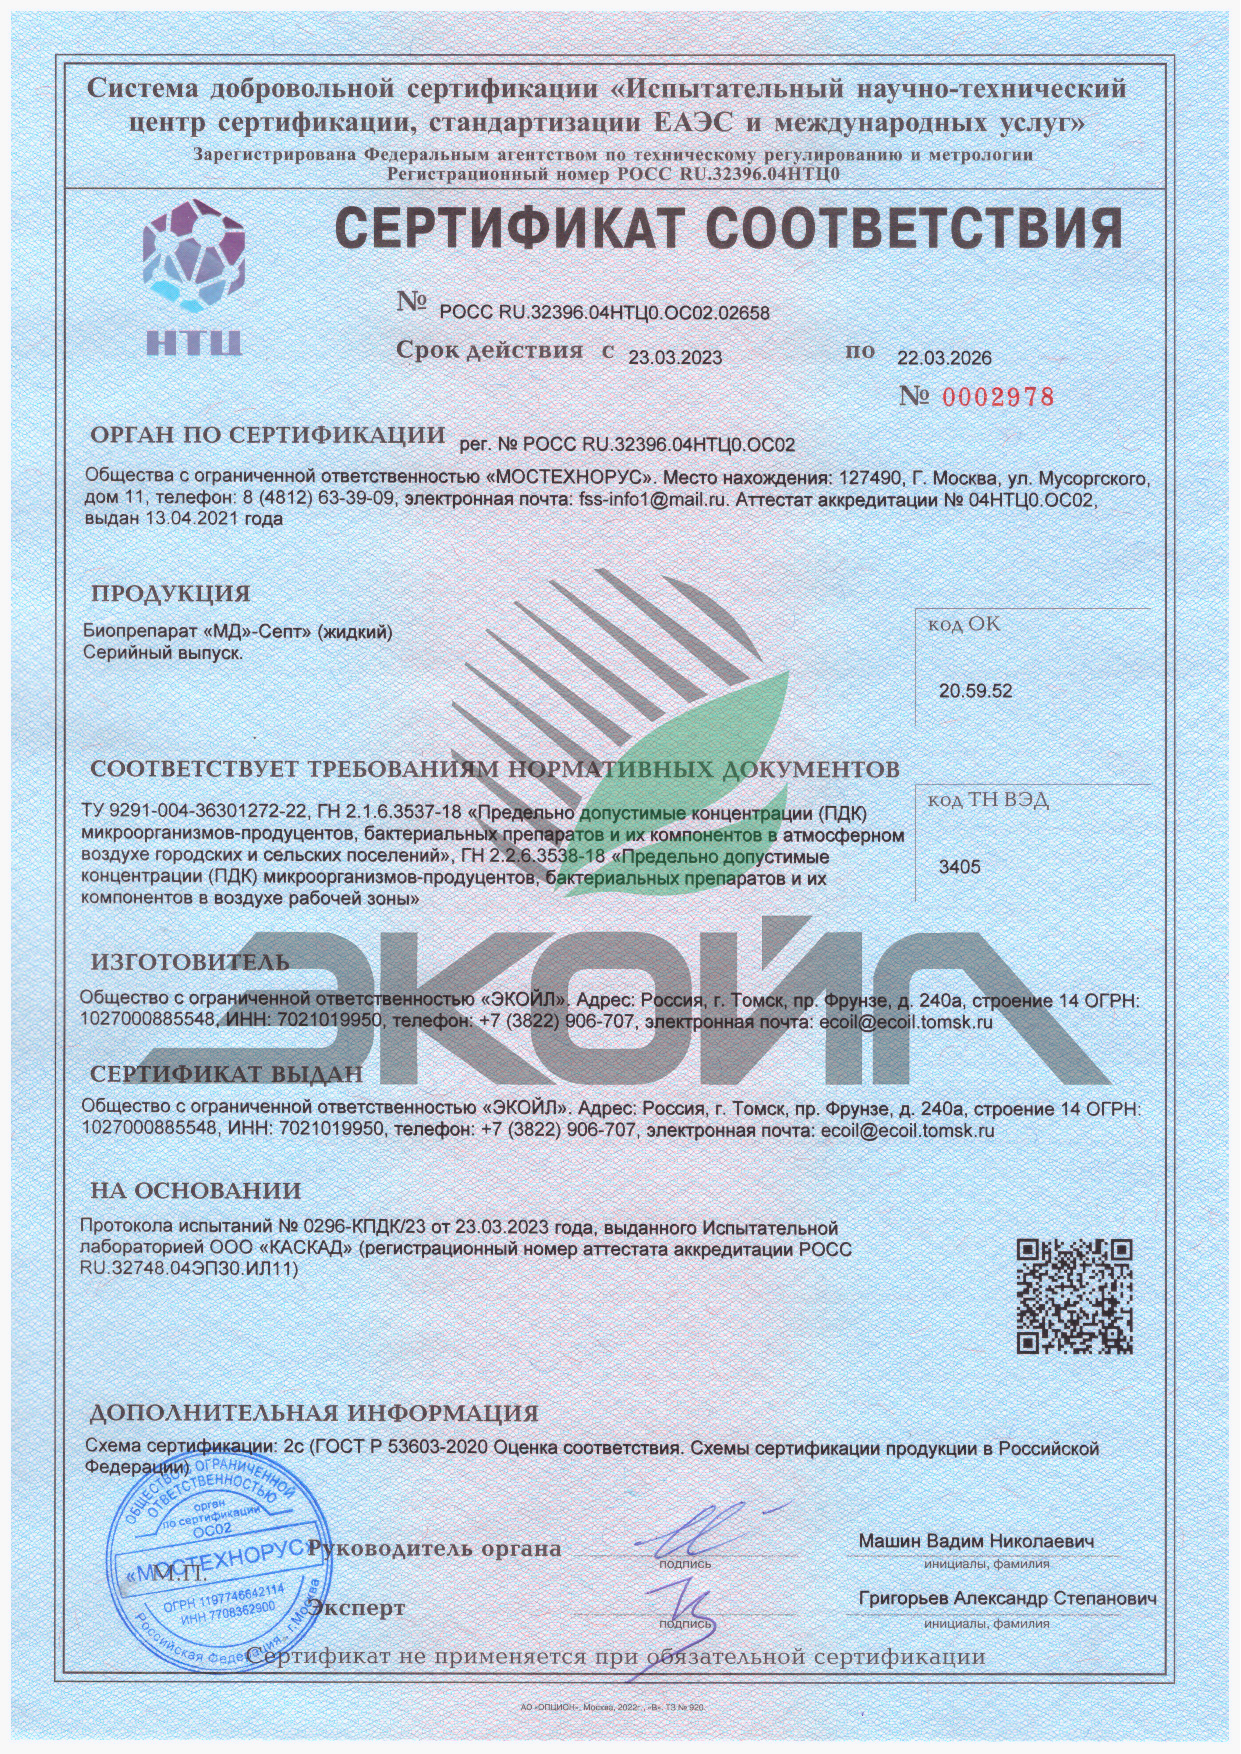 Сертификат соответствия ТУ - Биопрепарат "МД"-Септ" (жидкий)